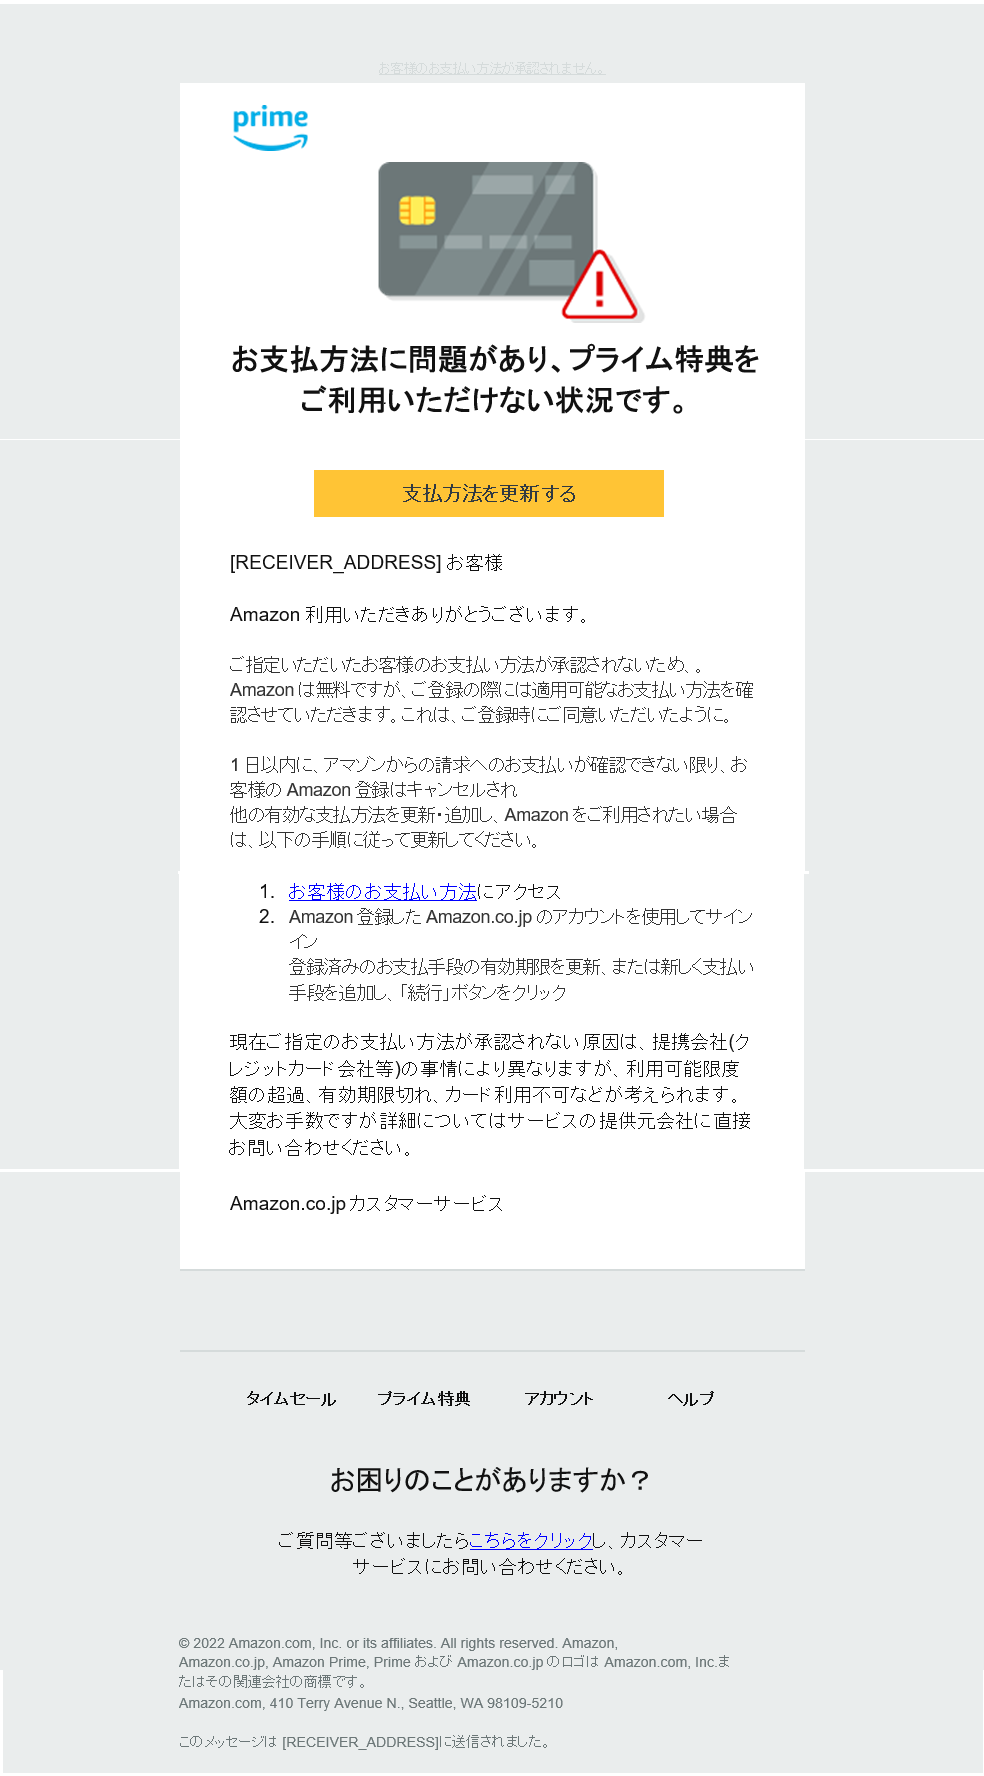 Amazon.co.jp】お客様のお支払い方法が承認されません #878-9432229-8 